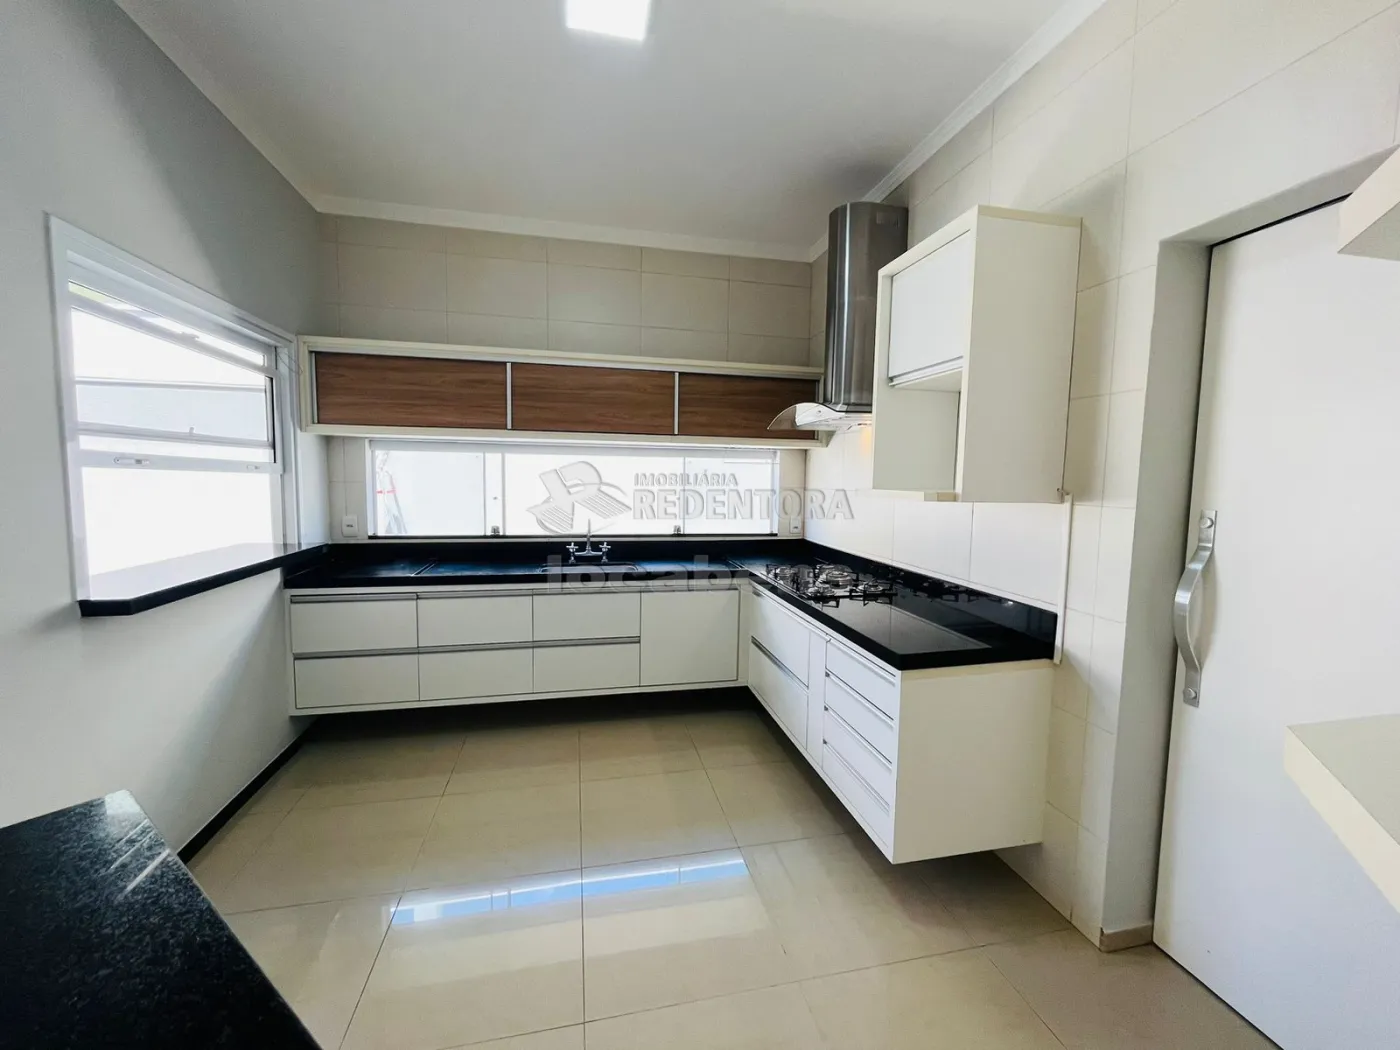 Comprar Casa / Condomínio em Mirassol apenas R$ 860.000,00 - Foto 7